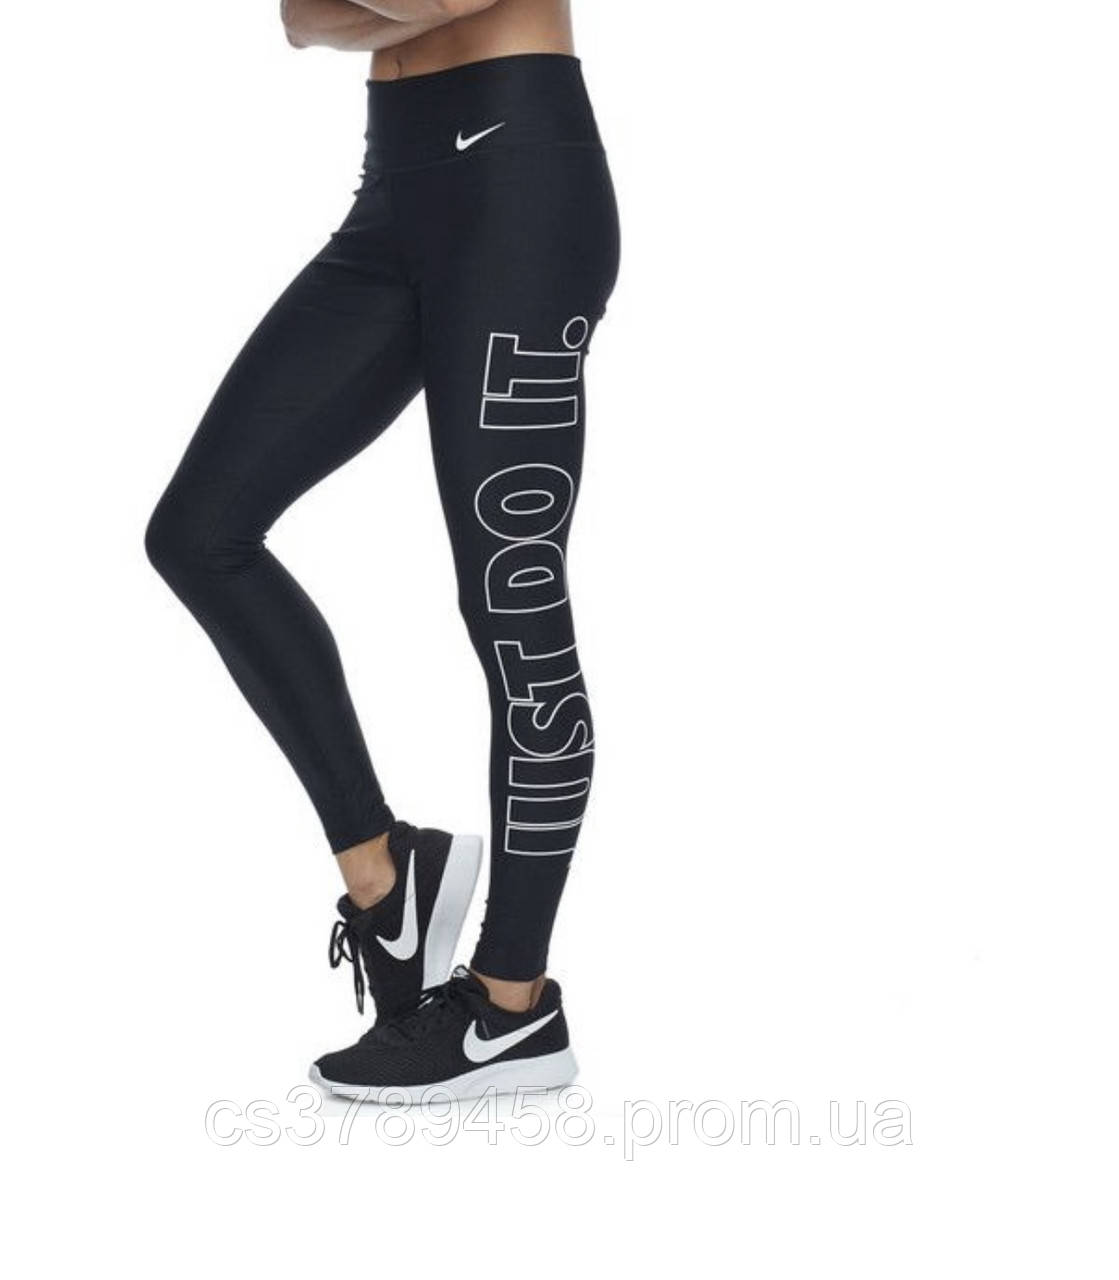 Жіночі легінси Nike tight fit XS Чорні з принтом 464-